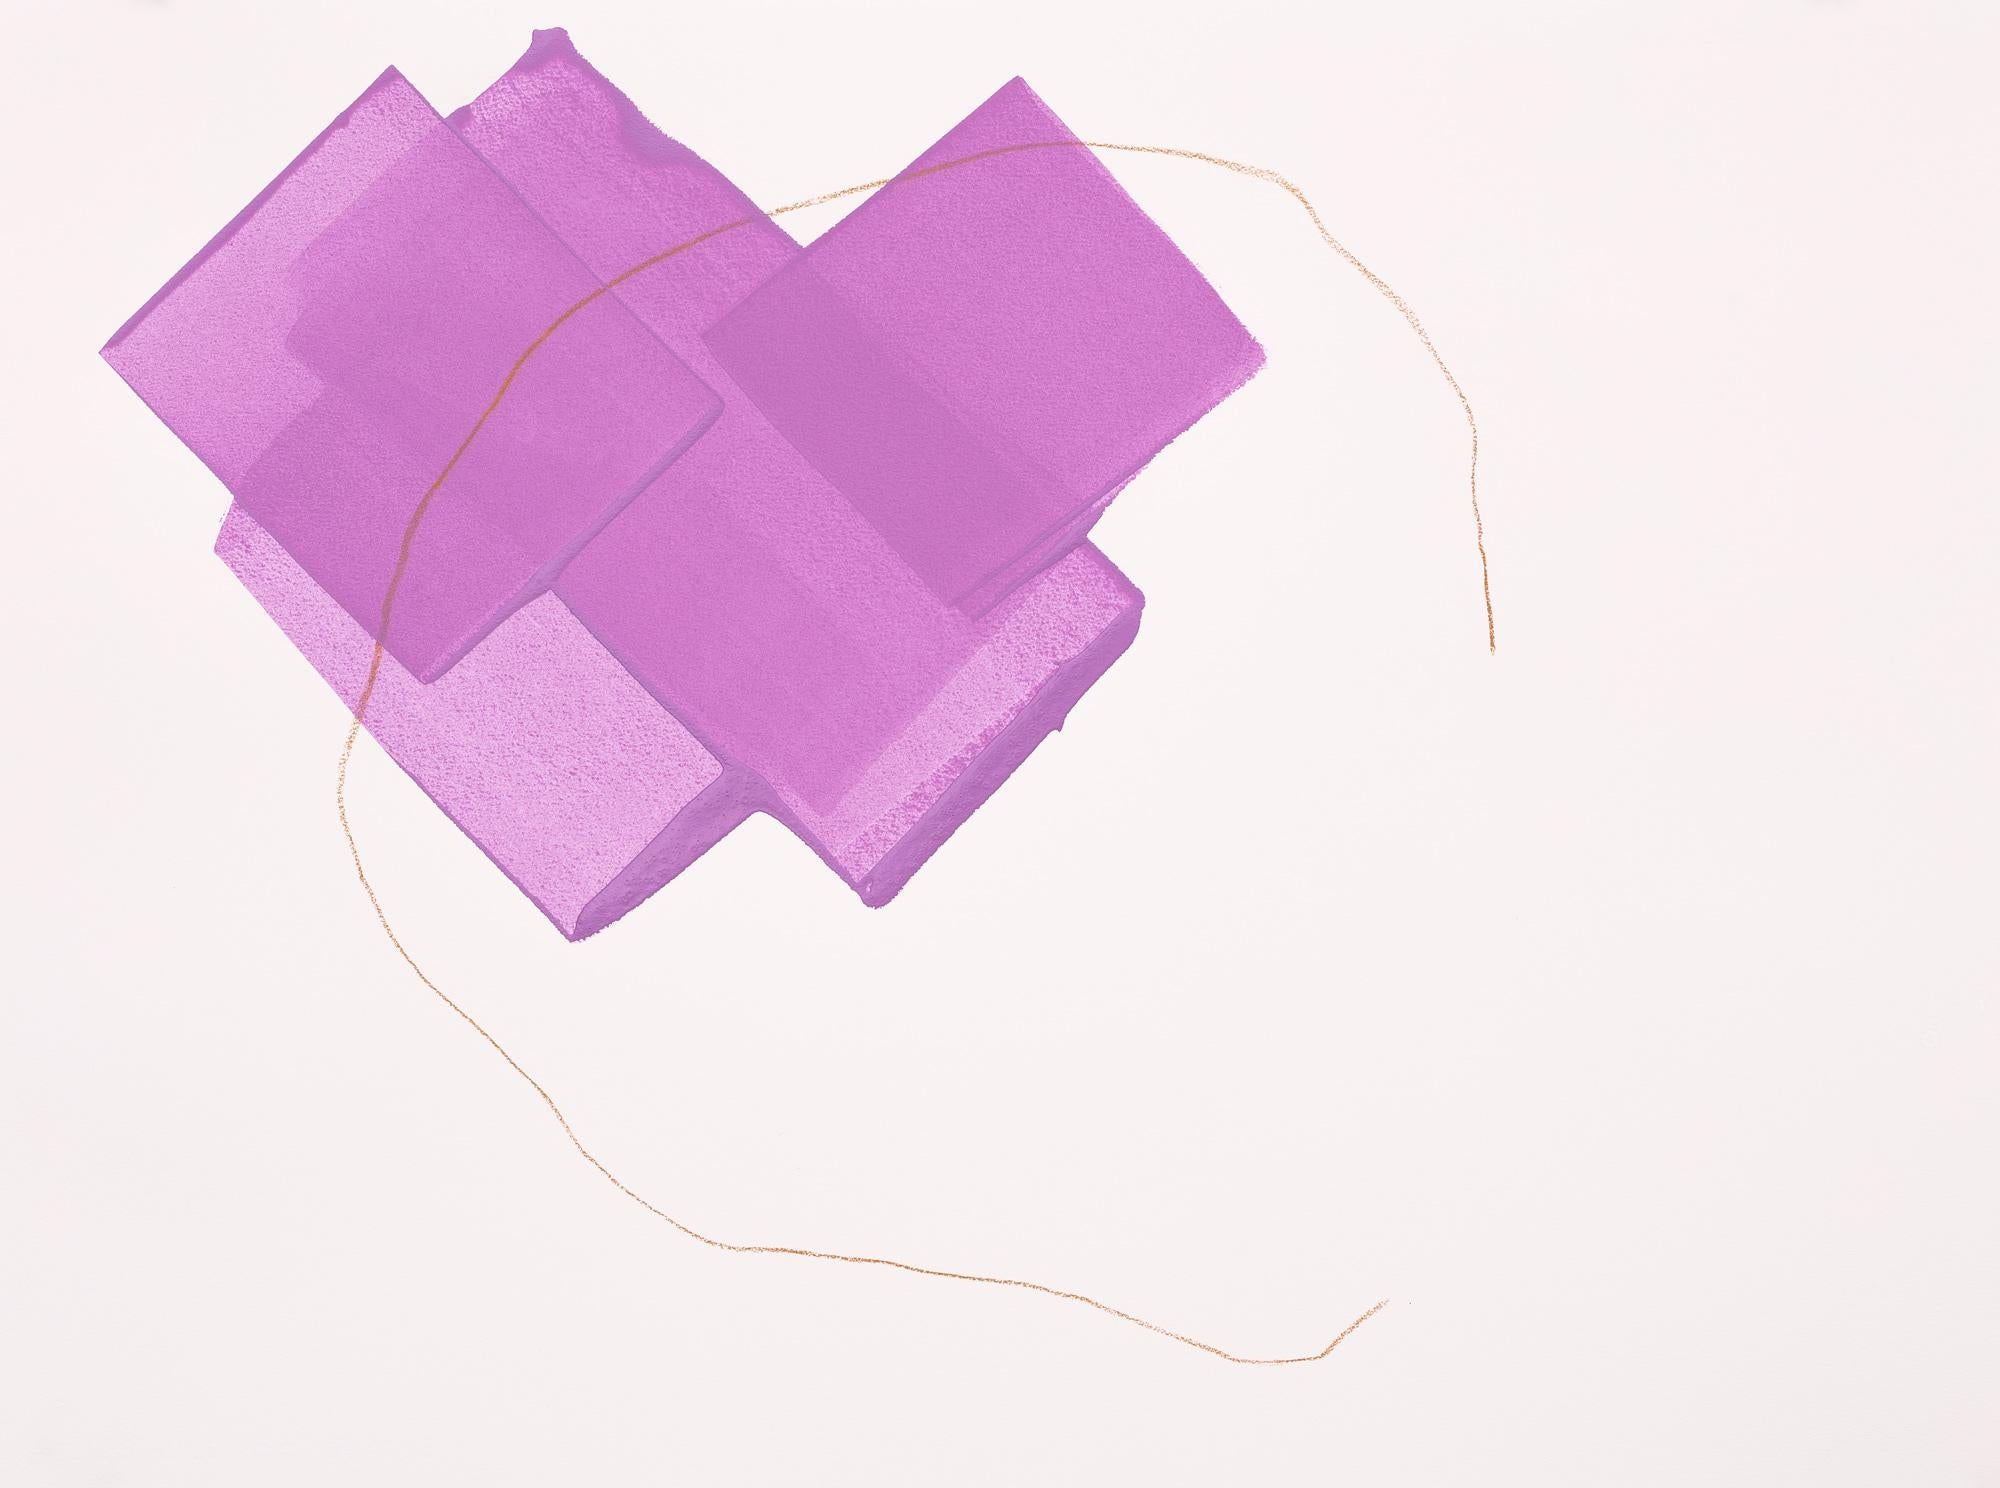 « Purple Fall », paysage d'hiver abstrait contemporain en acrylique et crayon sur papier